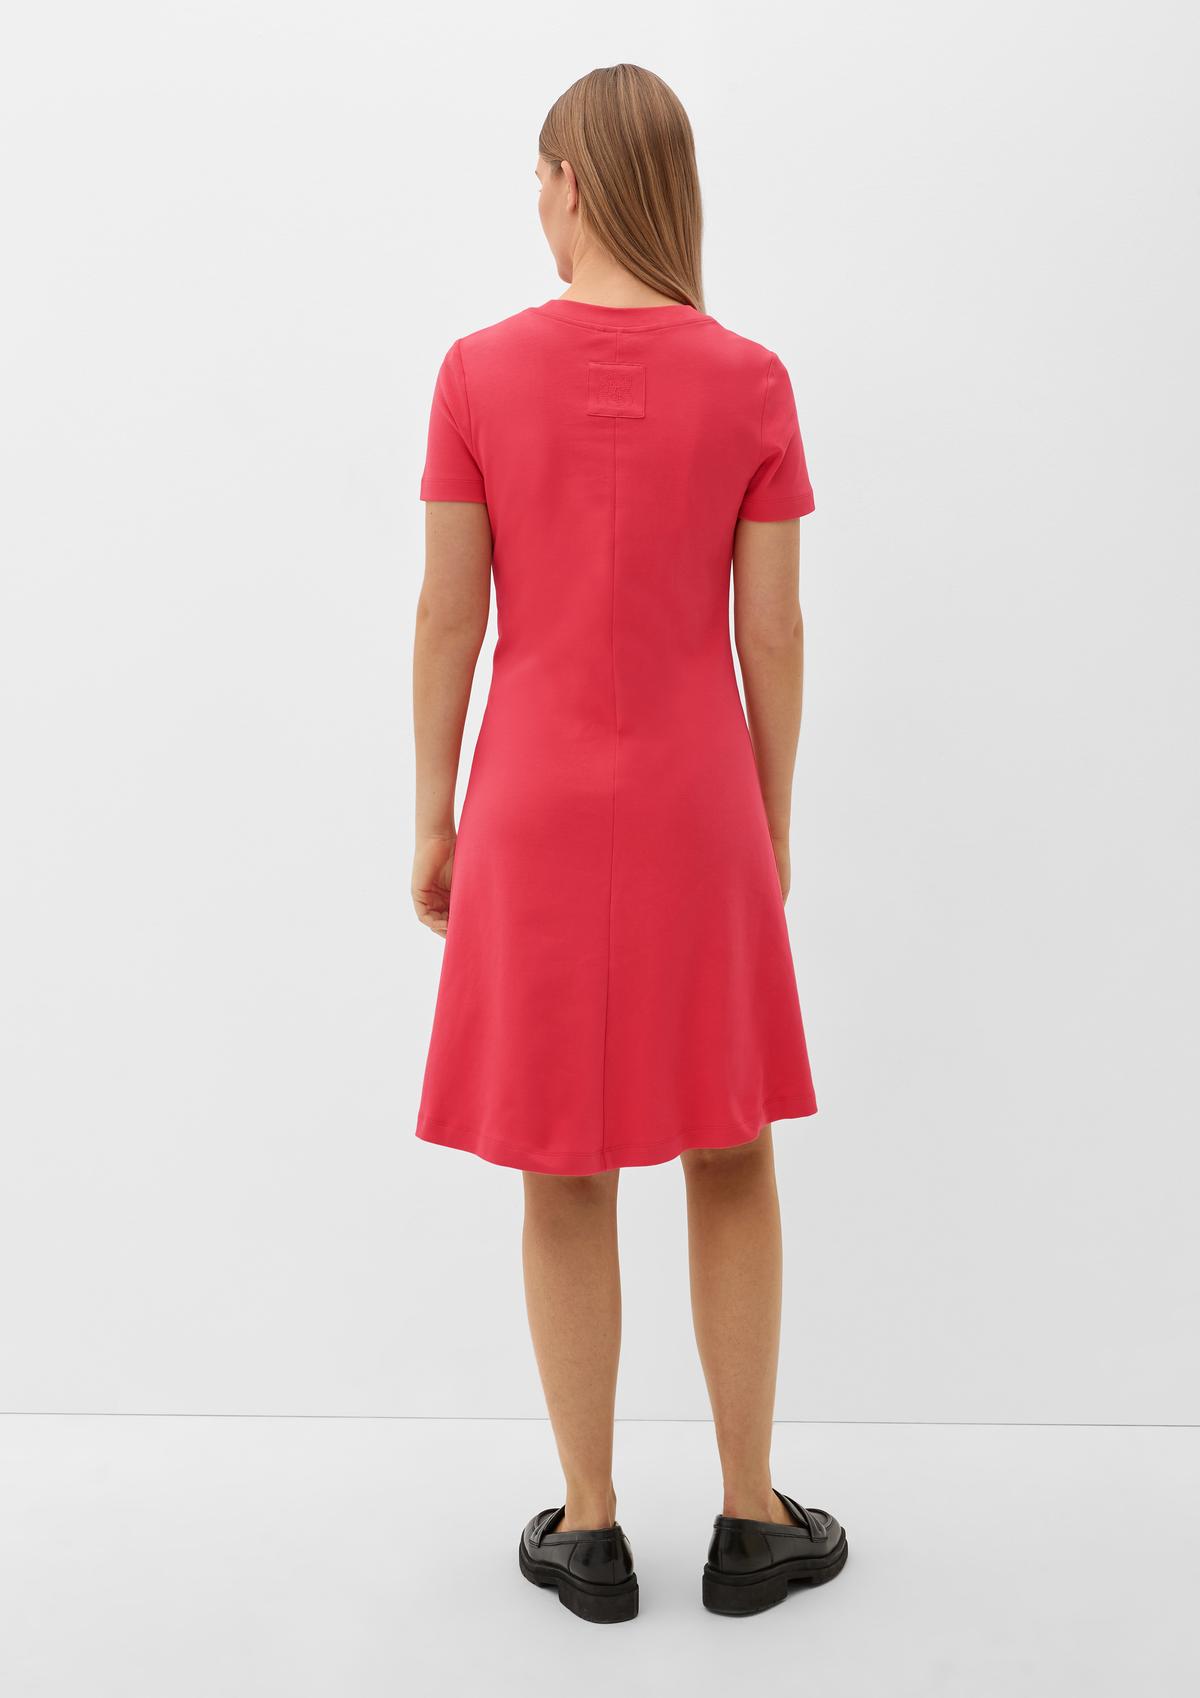 Kleid aus Jersey - pink | Strandkleider